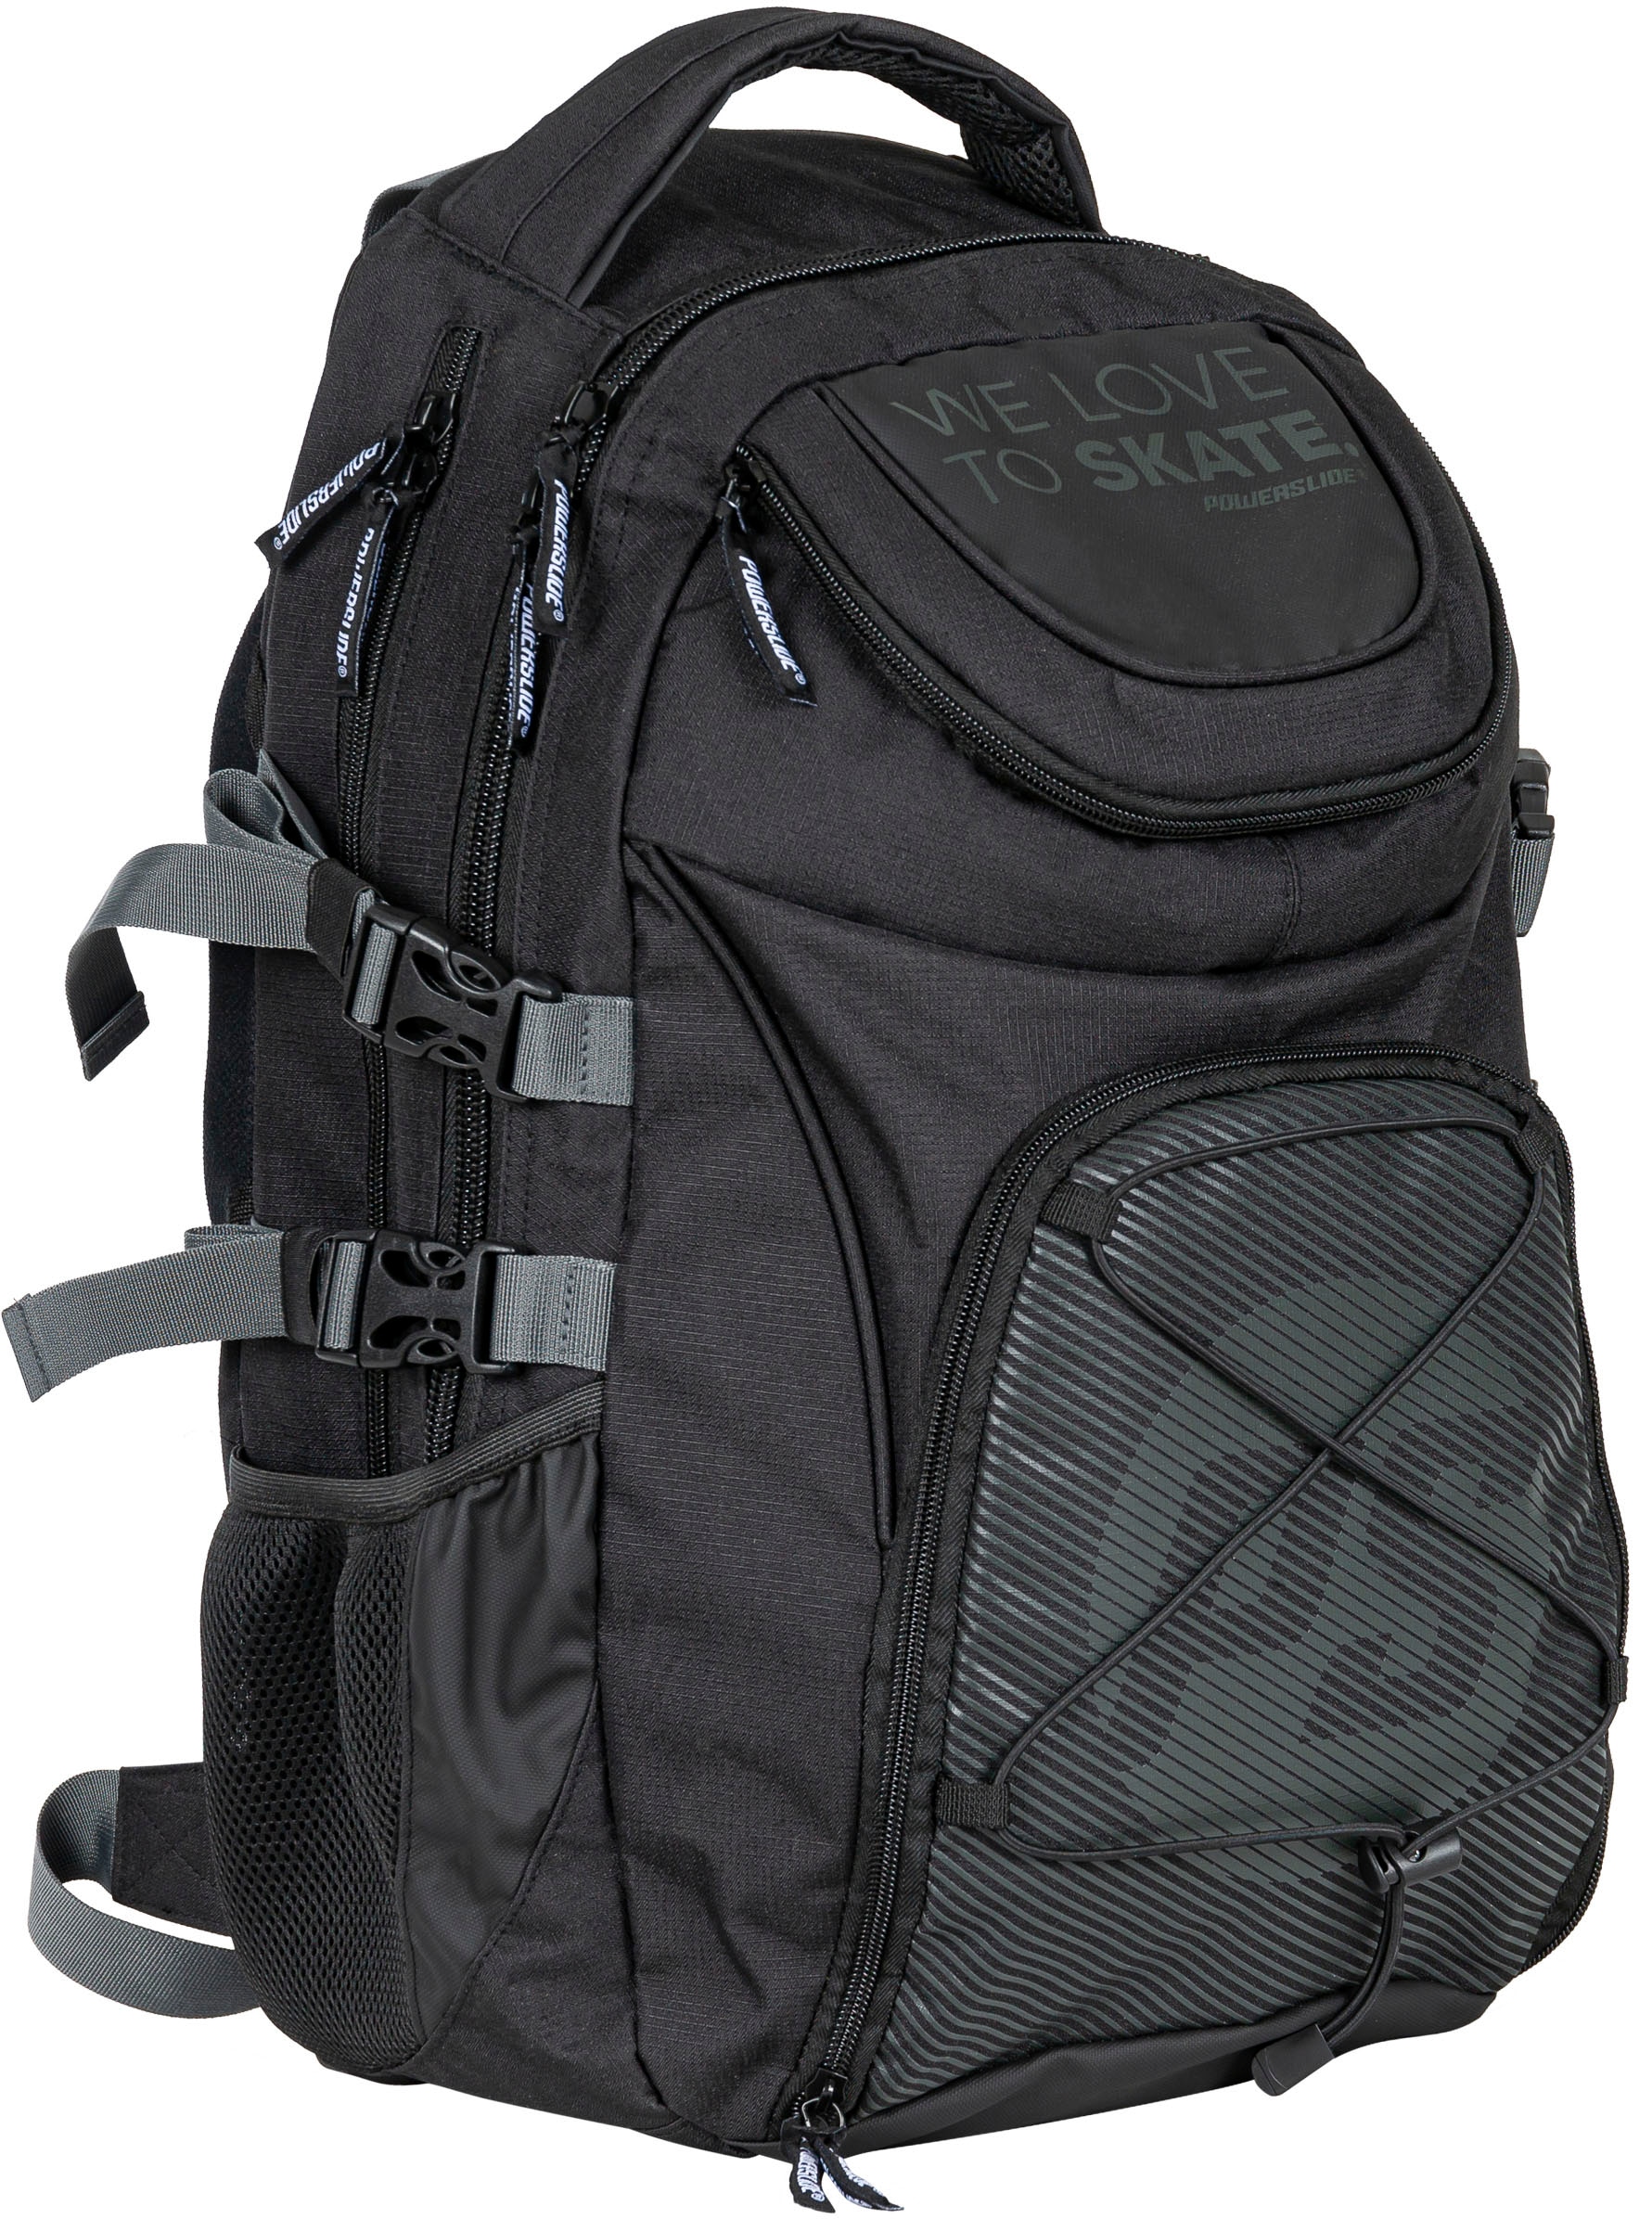 Powerslide Sportrucksack "WeLoveToSkate Backpack"